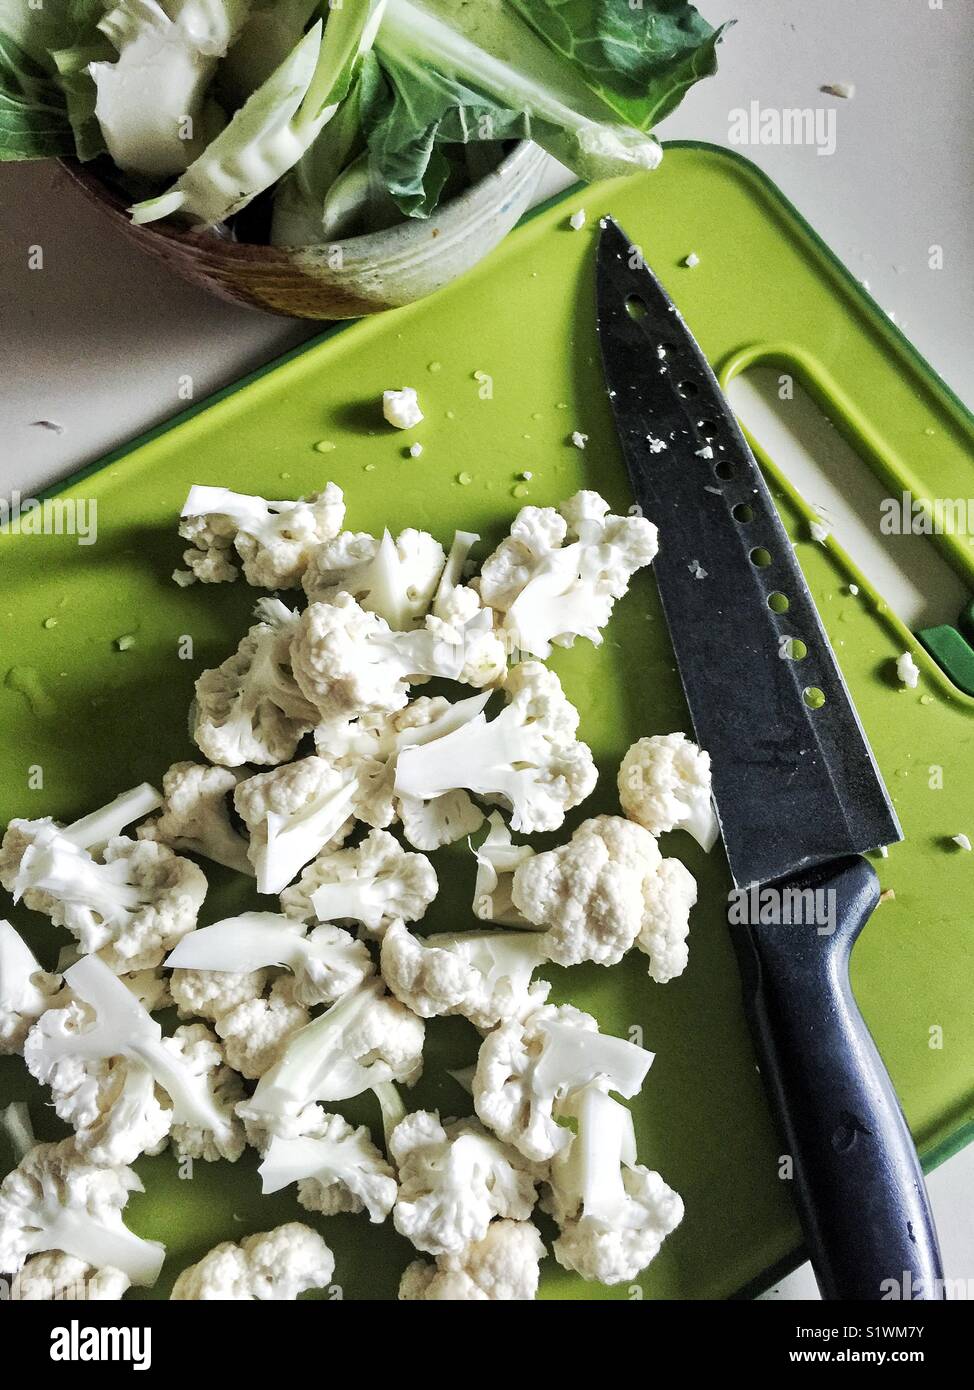 La coliflor picada en verde brillante junto a la placa de corte de cuchilla del chef. Foto de stock